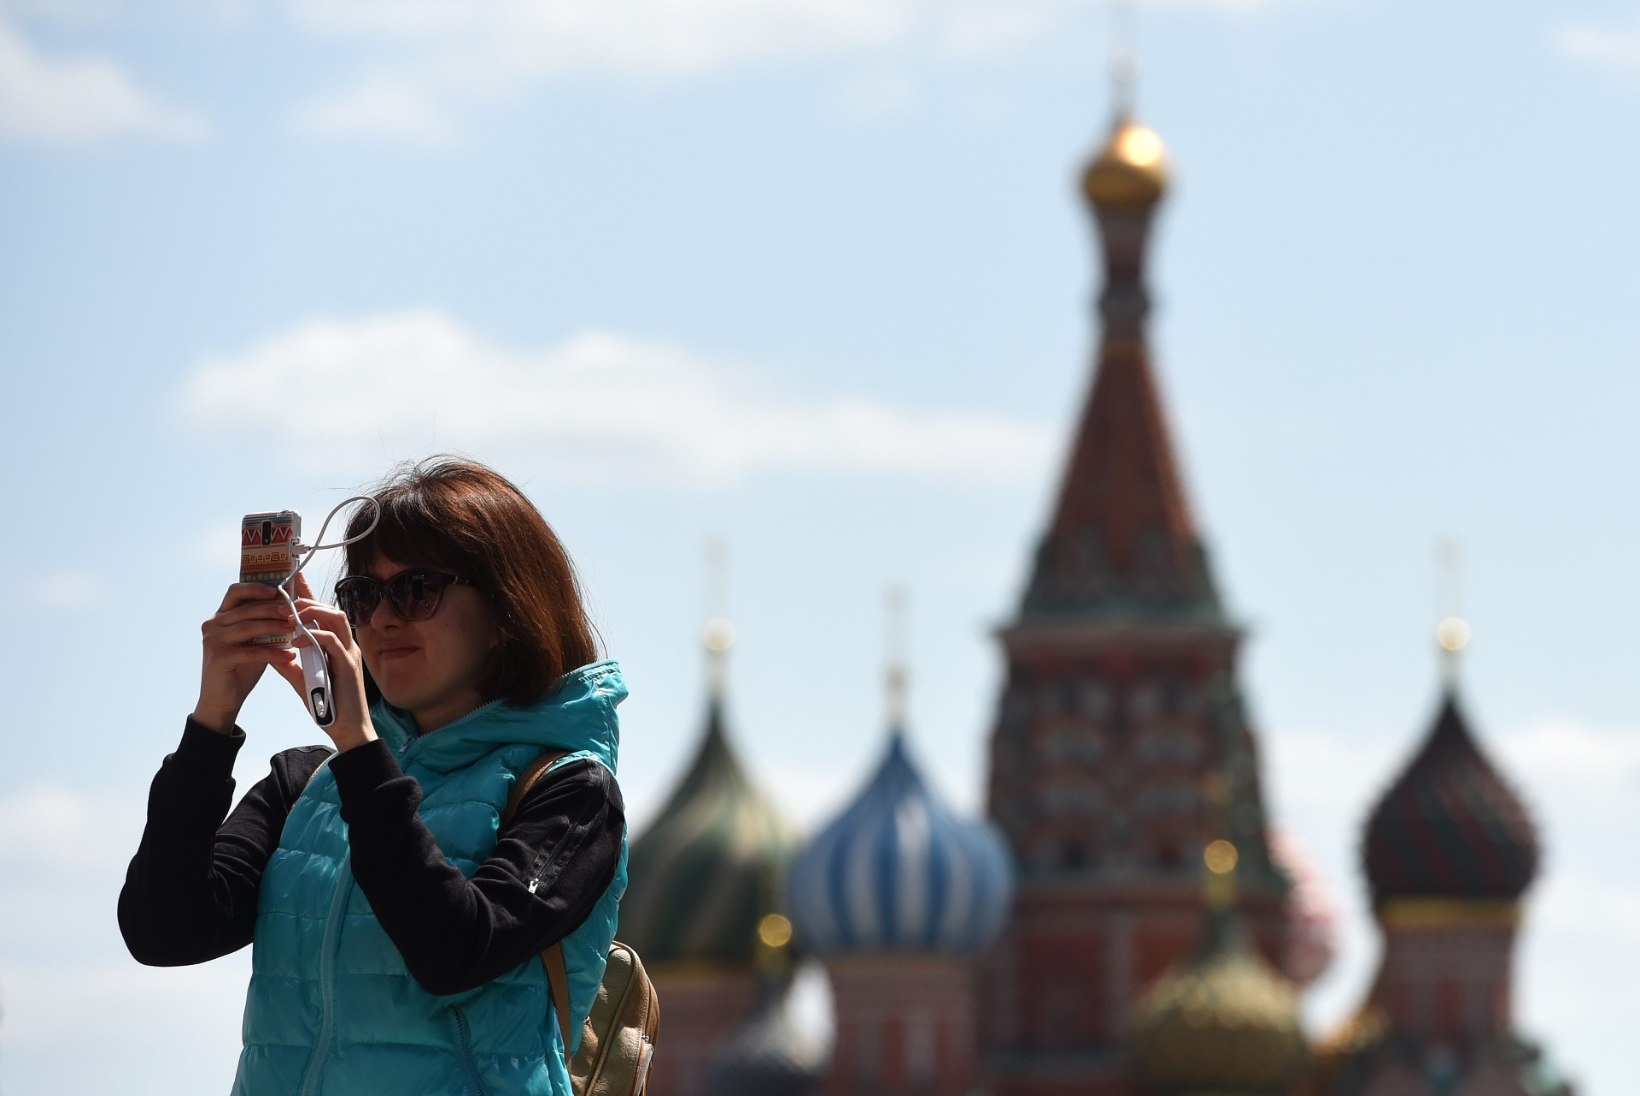 Venemaa poliitikud kardavad, et Pokémon Go on Lääne vandenõu riigi kukutamiseks